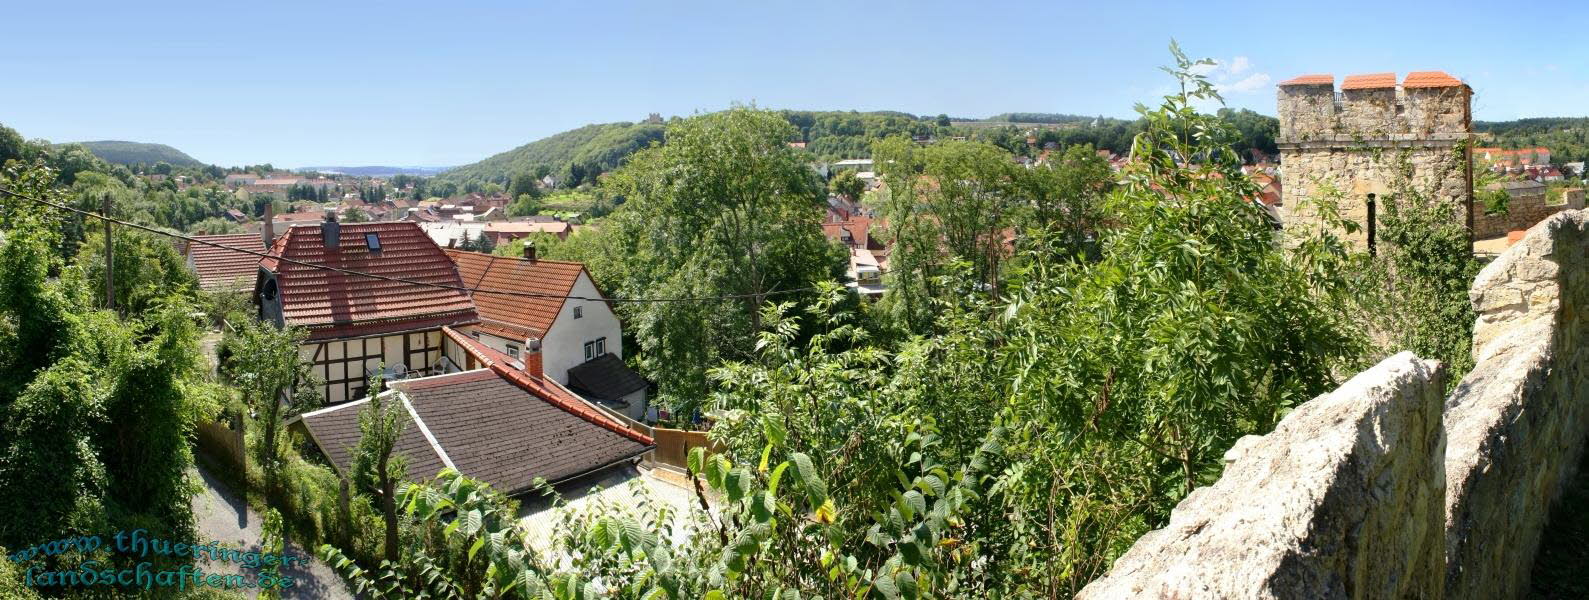 Niederburg Kranichfeld